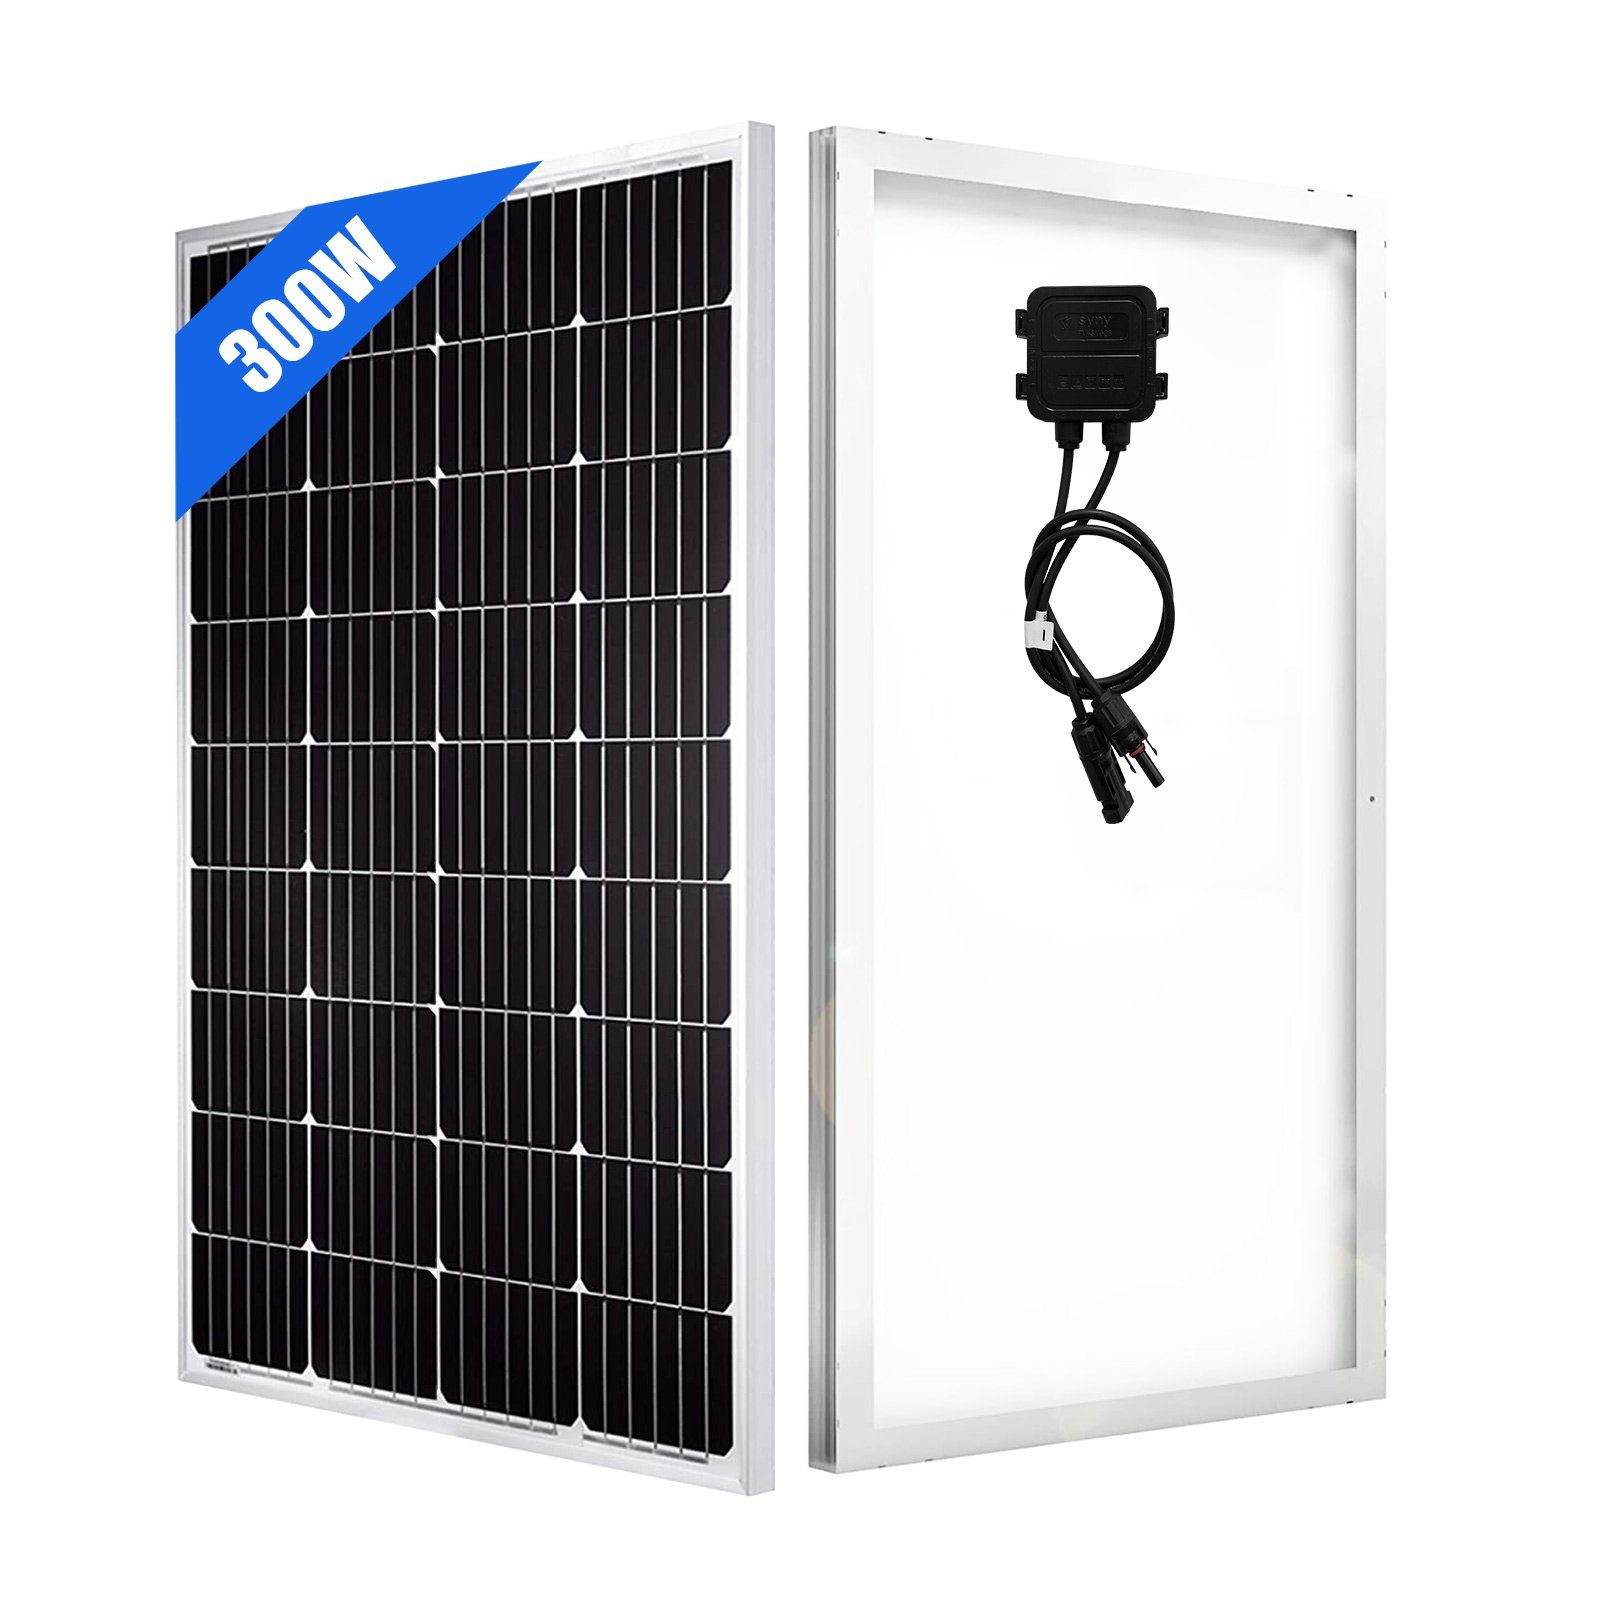 GLIESE Solarmodul 300W Solarpanel 45inch Halterung, 300,00 Monokristallin mit Kit W, Solarmodul